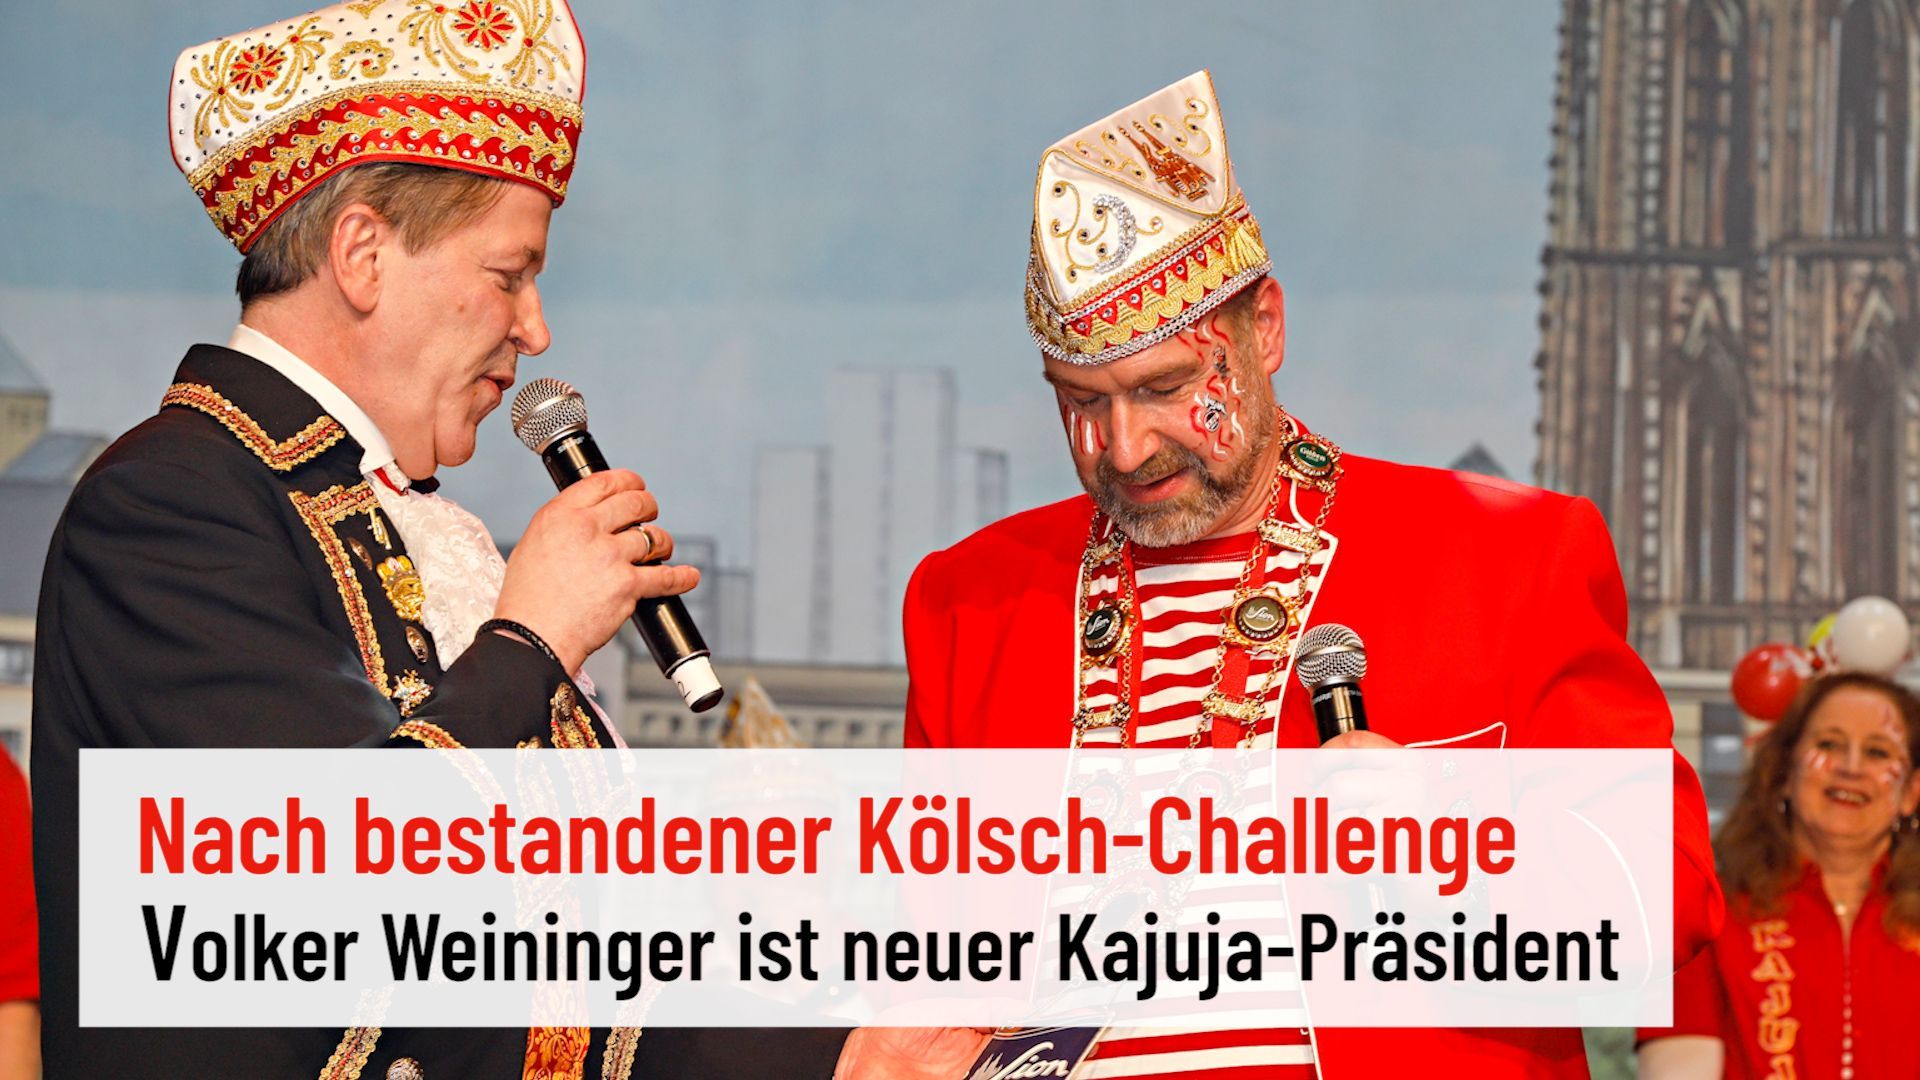 Jecke action in Cologne Carnival: Kölsch challenge for Volker Weininger